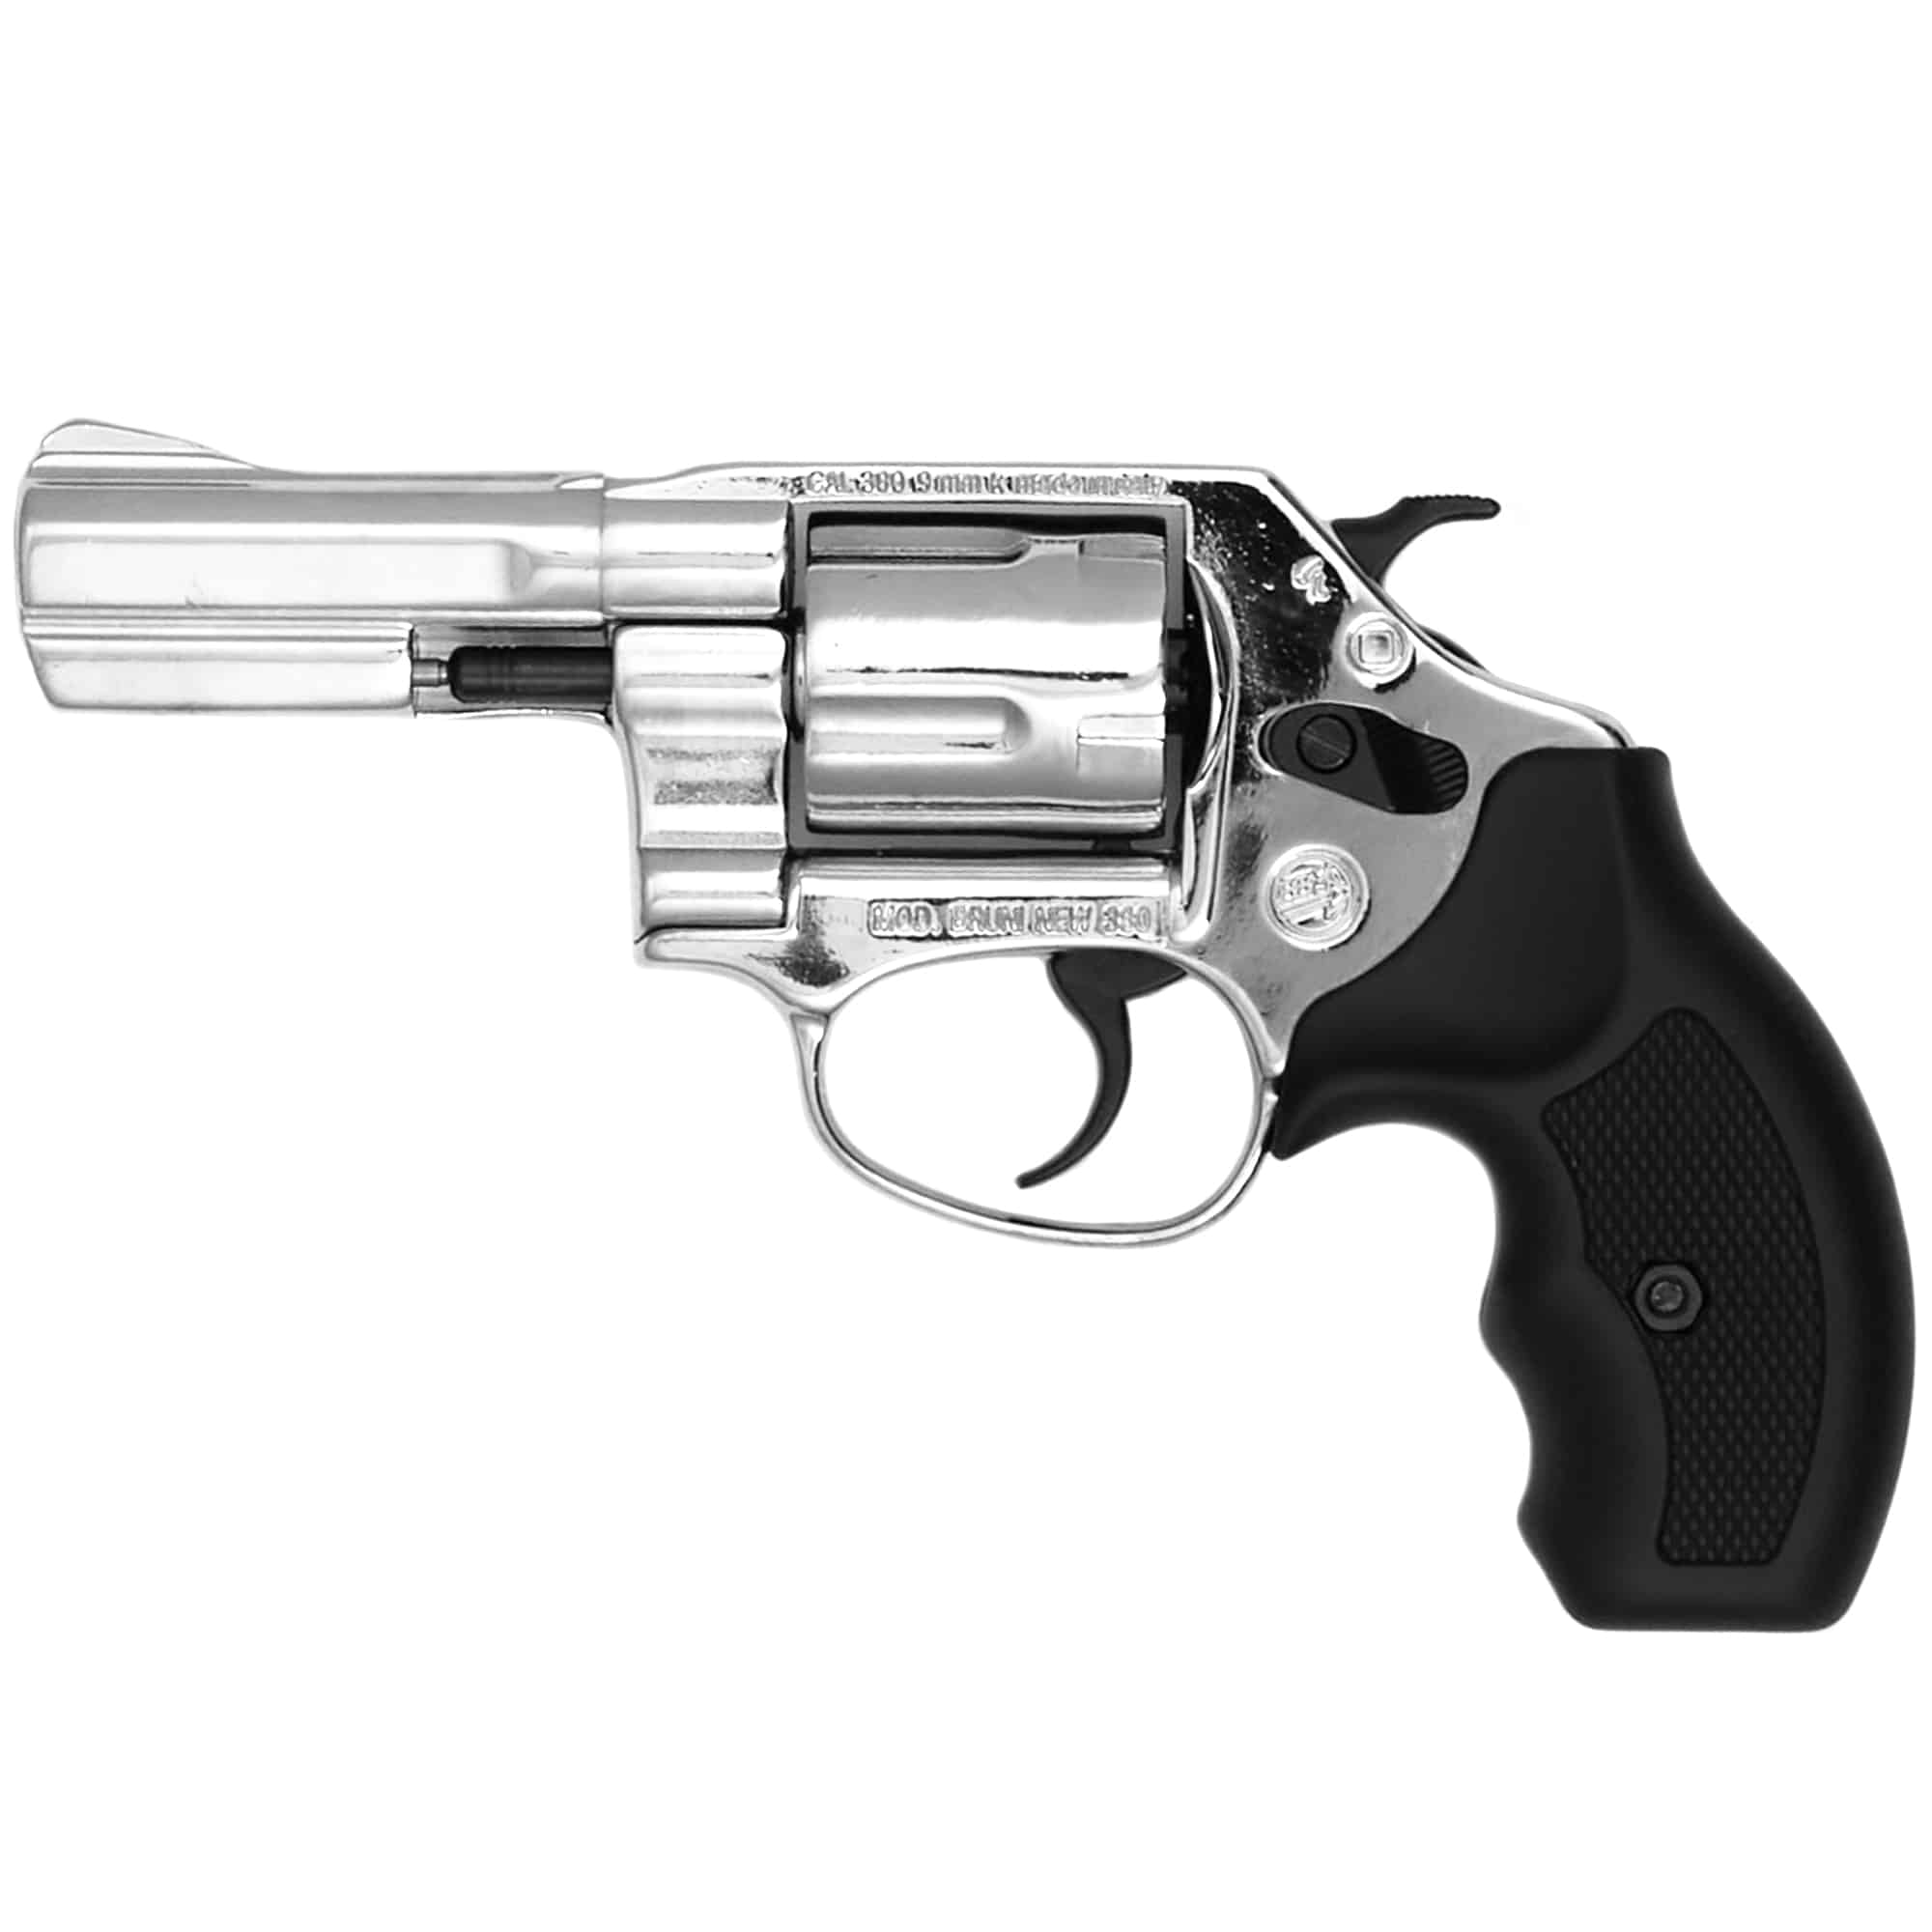 38-245-Bruni-38-Revolver-3-inch-Barrel-Nickel-Finish-B_1024x1024@2x.jpg